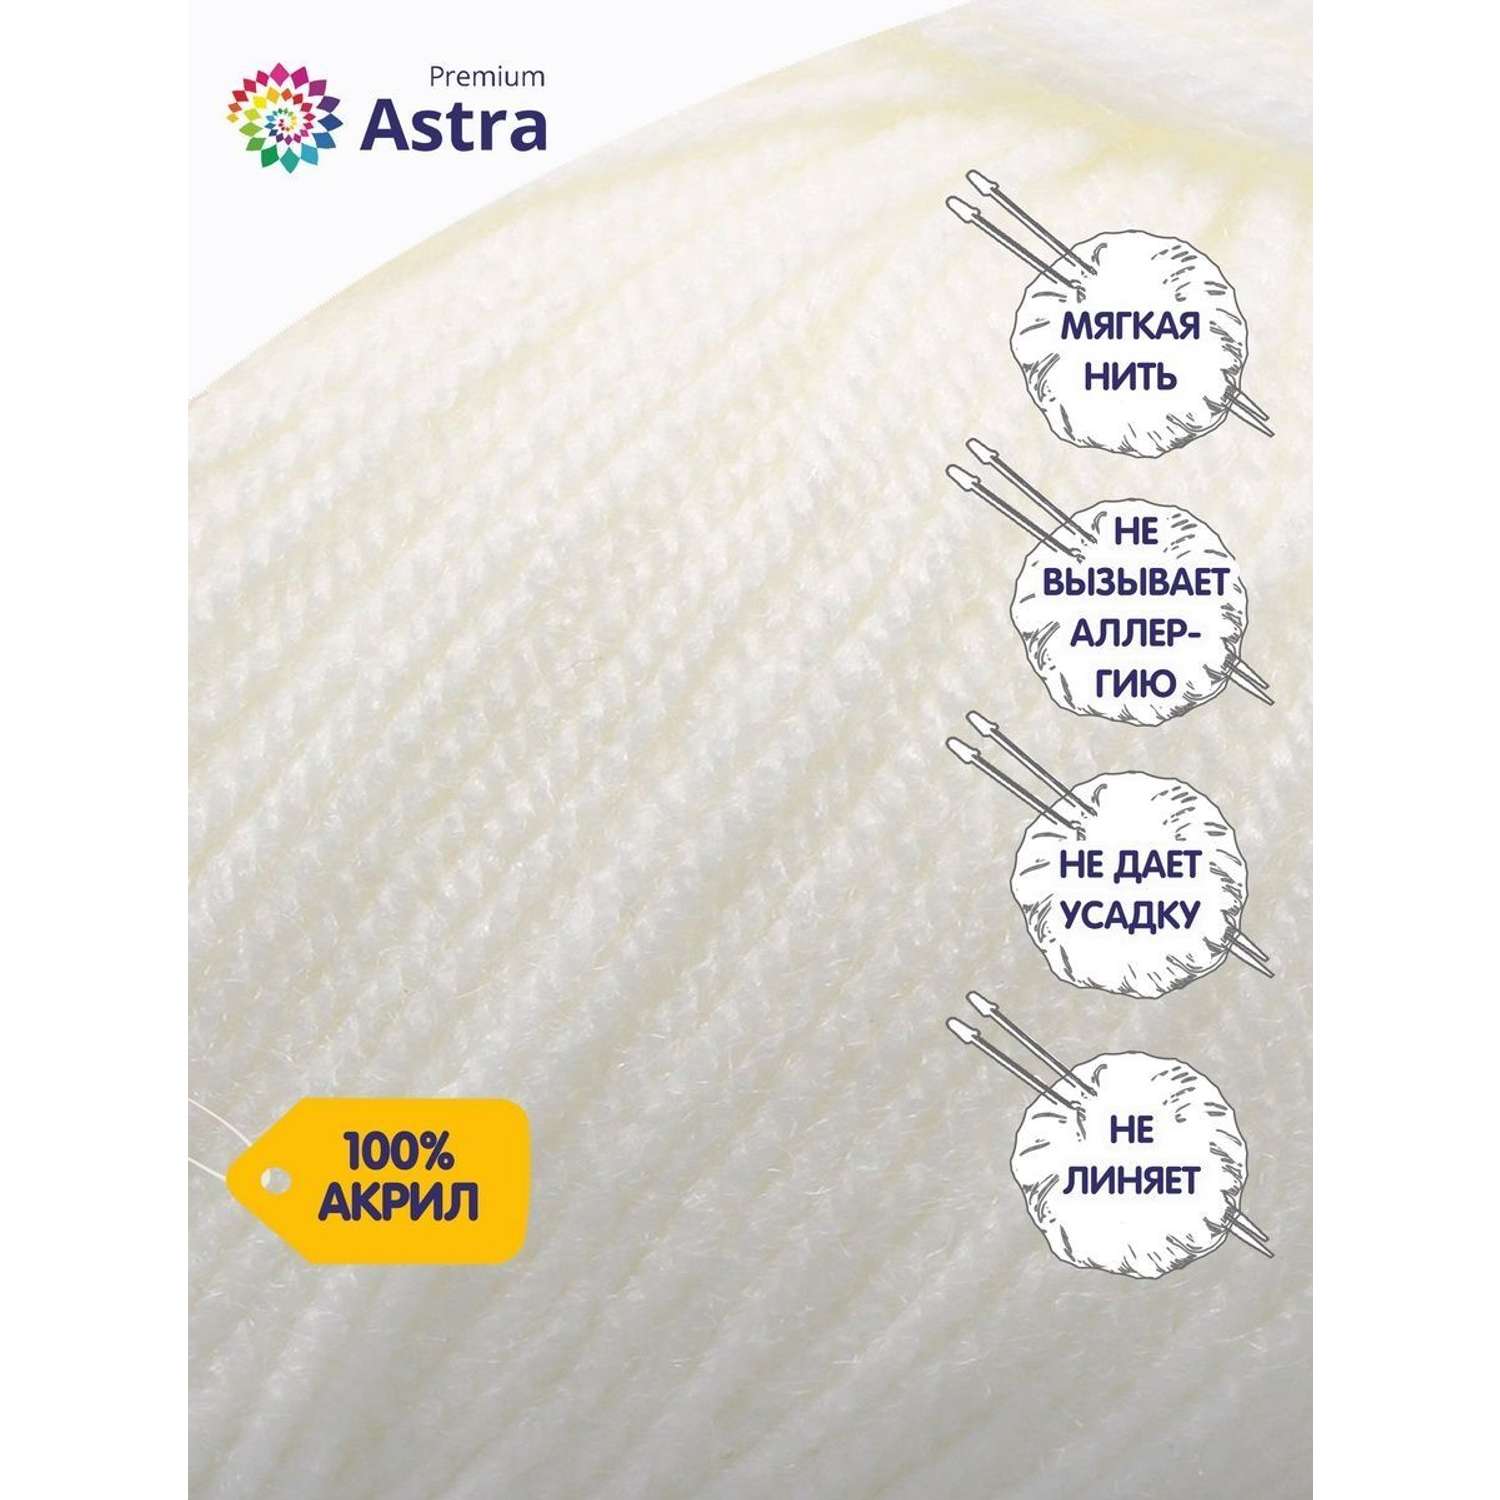 Пряжа для вязания Astra Premium амигуруми акрил для мягких игрушек 50 гр 175 м 002 отбелка 6 мотков - фото 2